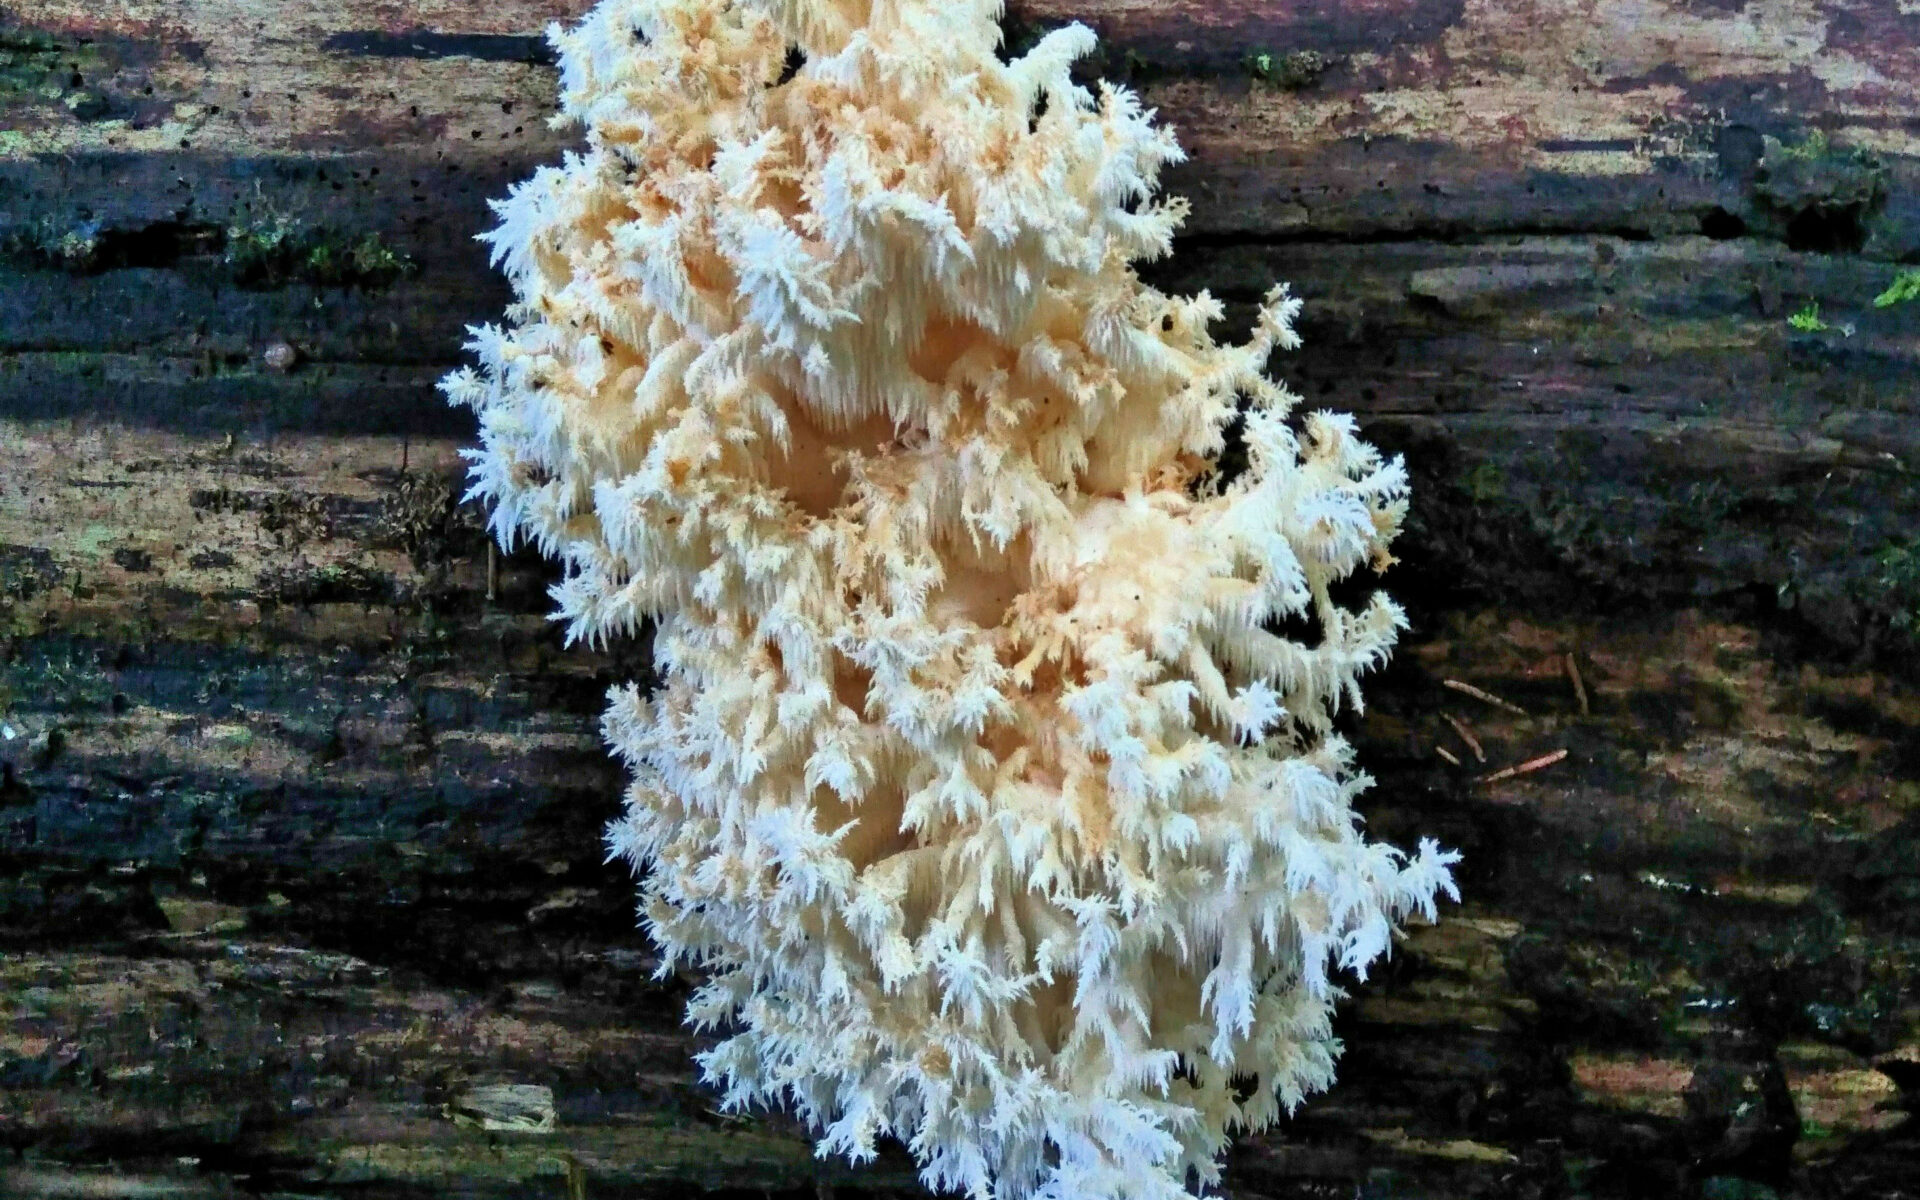 Ежовик коралловидный Hericium coralloides